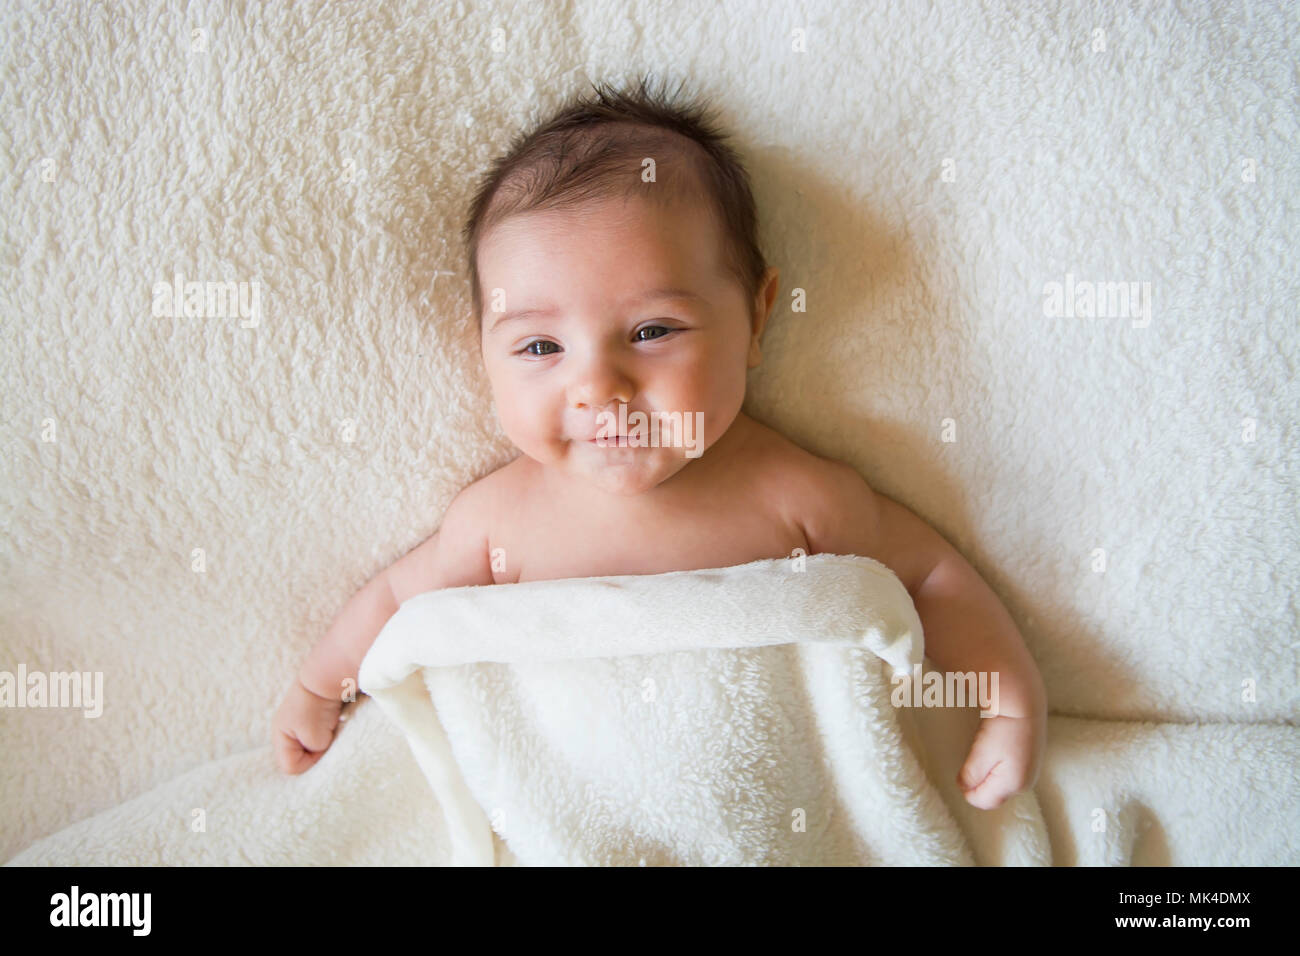 Baby Boy sonriendo mirando a la cámara Foto de stock